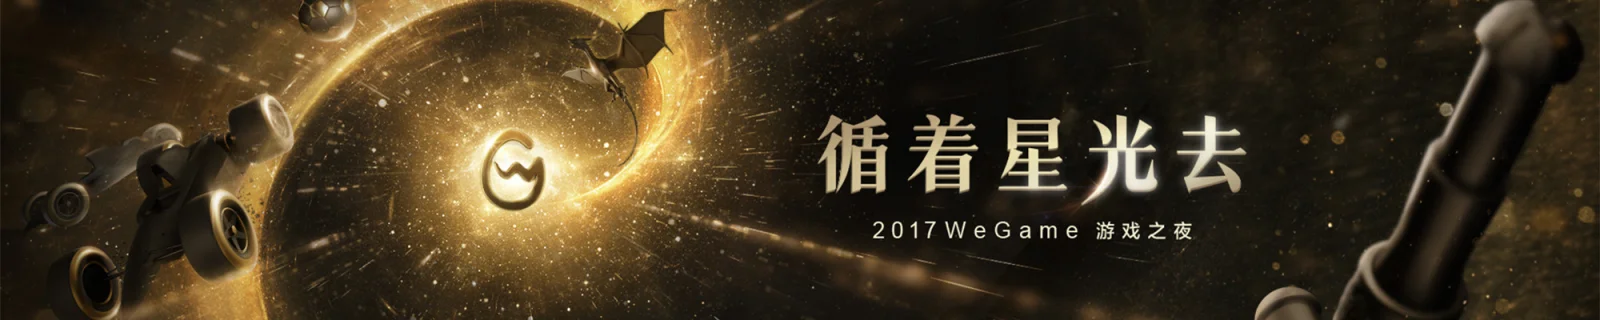 11月5日晚7点，Wegame将举办“2017游戏之夜”线上发布会